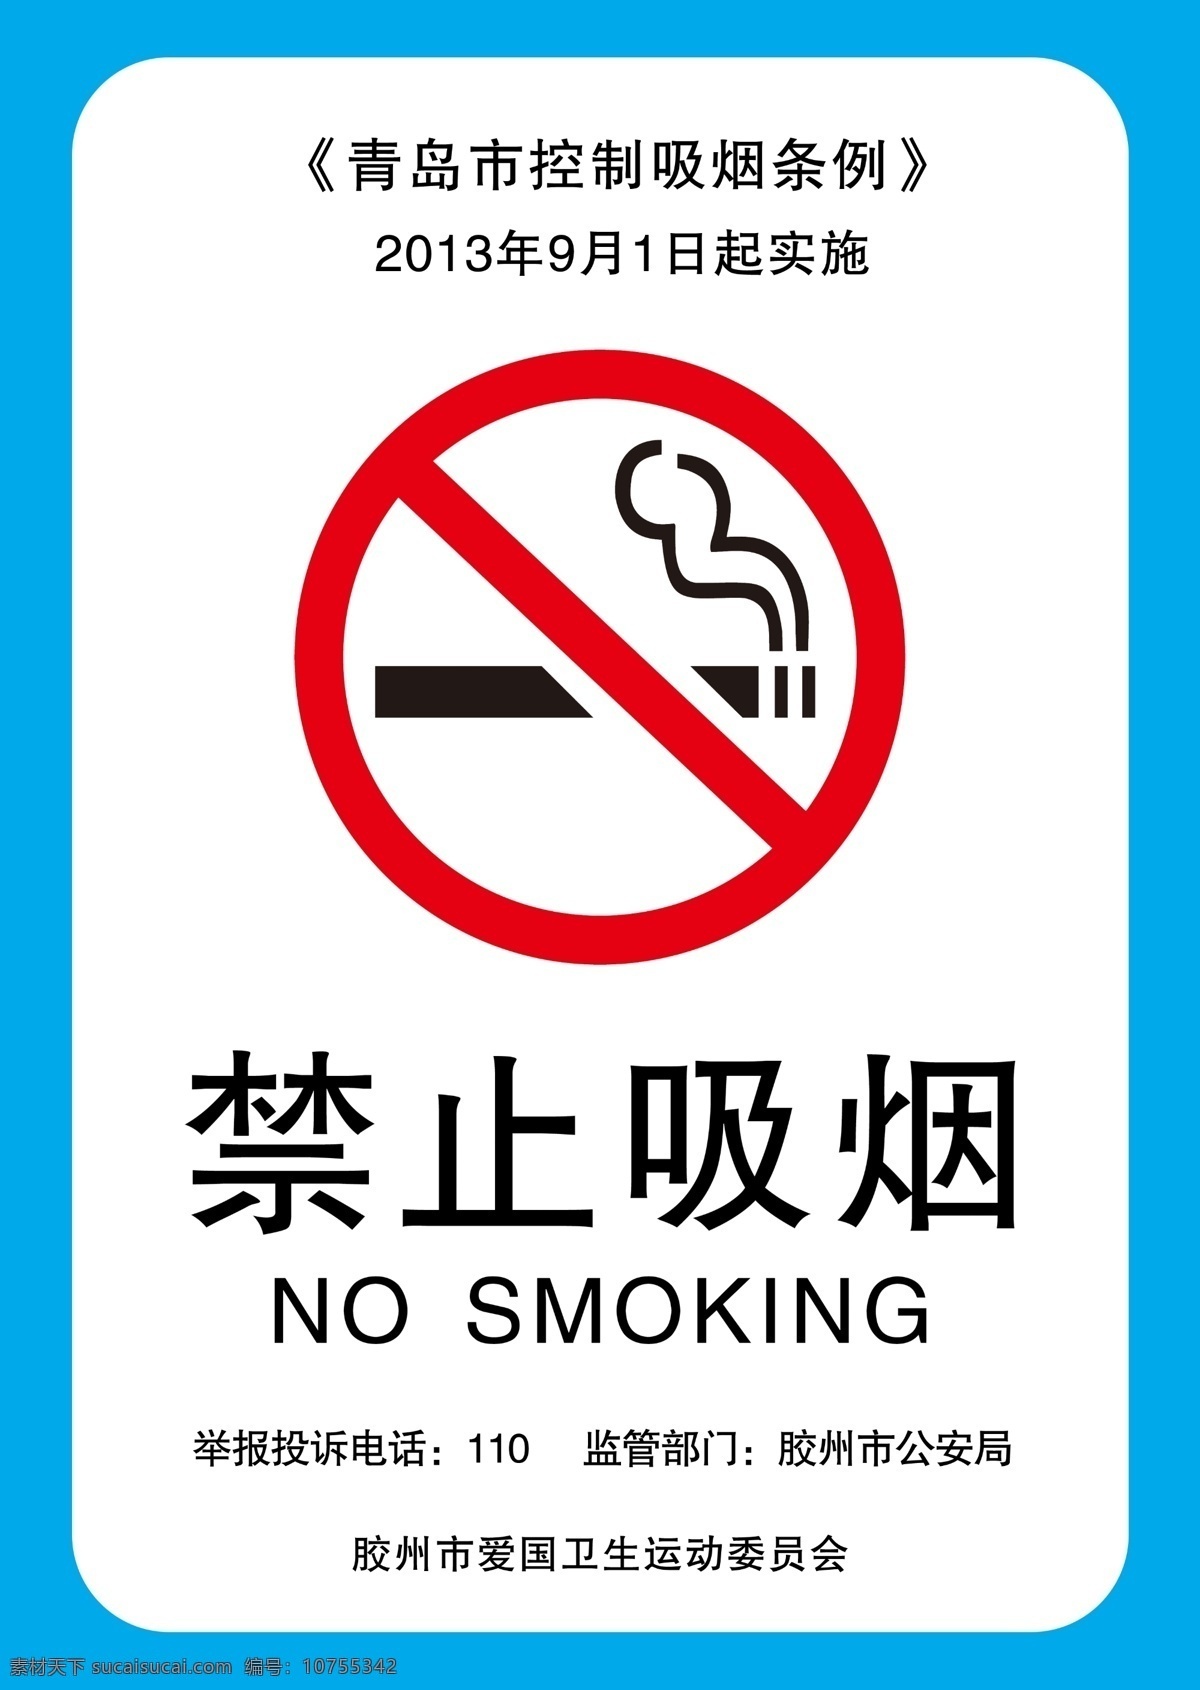 防控吸烟条例 防控吸烟 吸烟条例 卫生 公共卫生 公共安全 防控条例 禁止吸烟标志 禁止吸烟警示 标识牌 禁止 吸烟 烟 警示牌 警示 警告 警告牌 标识 警告标识 警示标识 安全标识 安全 告知牌